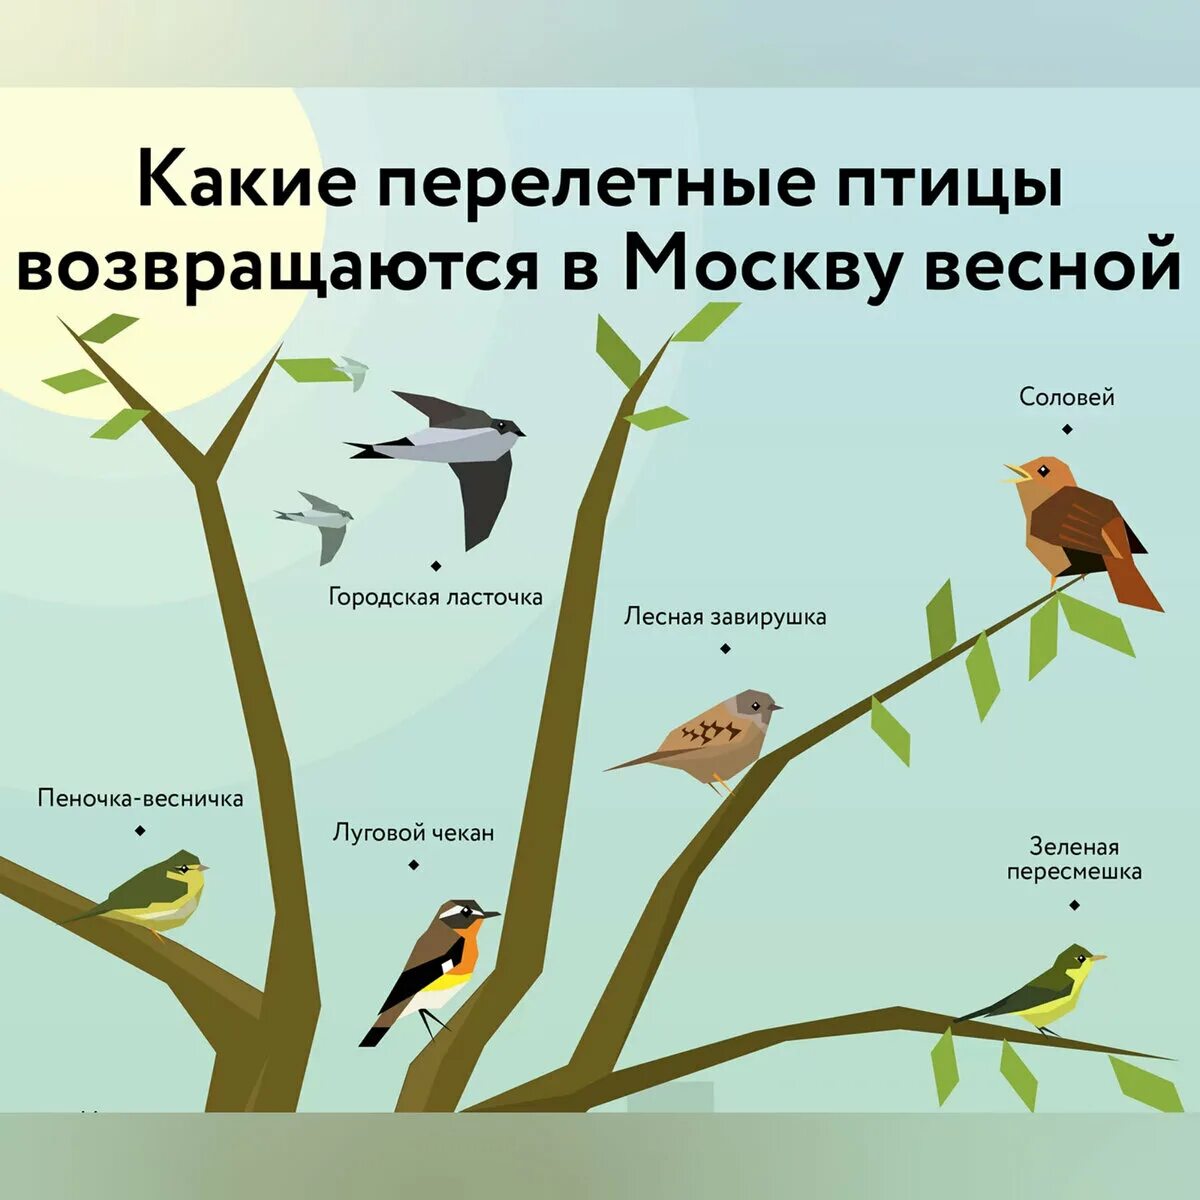 Планирование перелетные птицы весной. Какие птицы возвращаются весной. Какие перелетные птицы возвращаются. Какие перелетные птицы возвращаются весной. Перелетные птицы в Москве весной.